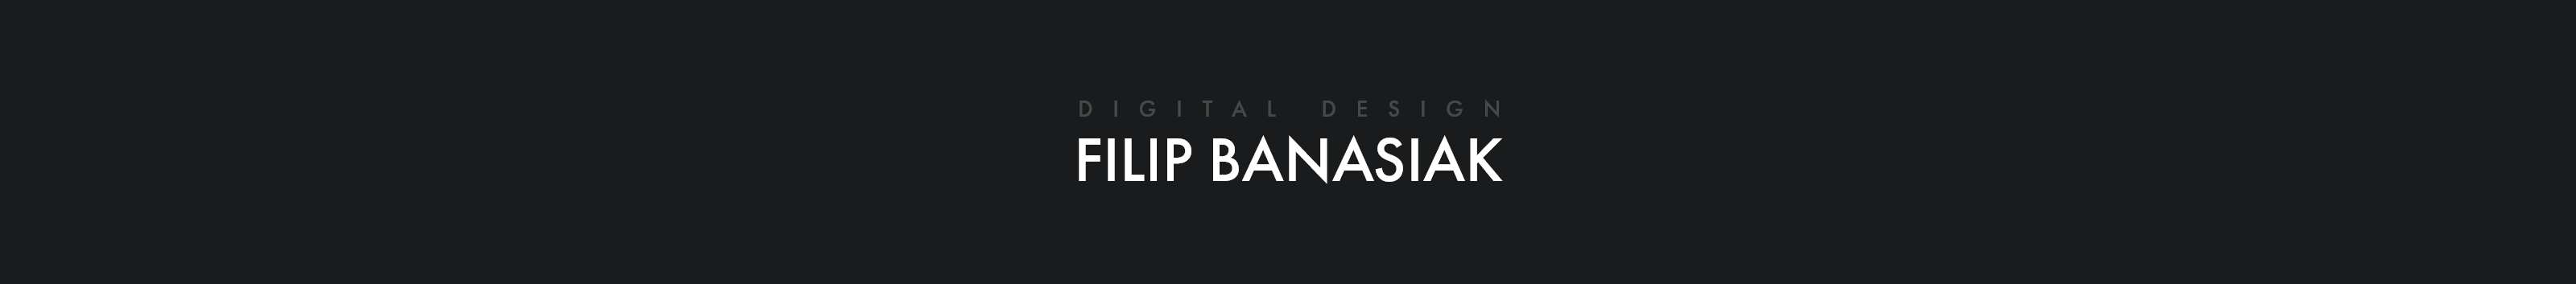 Filip Banasiak's profile banner